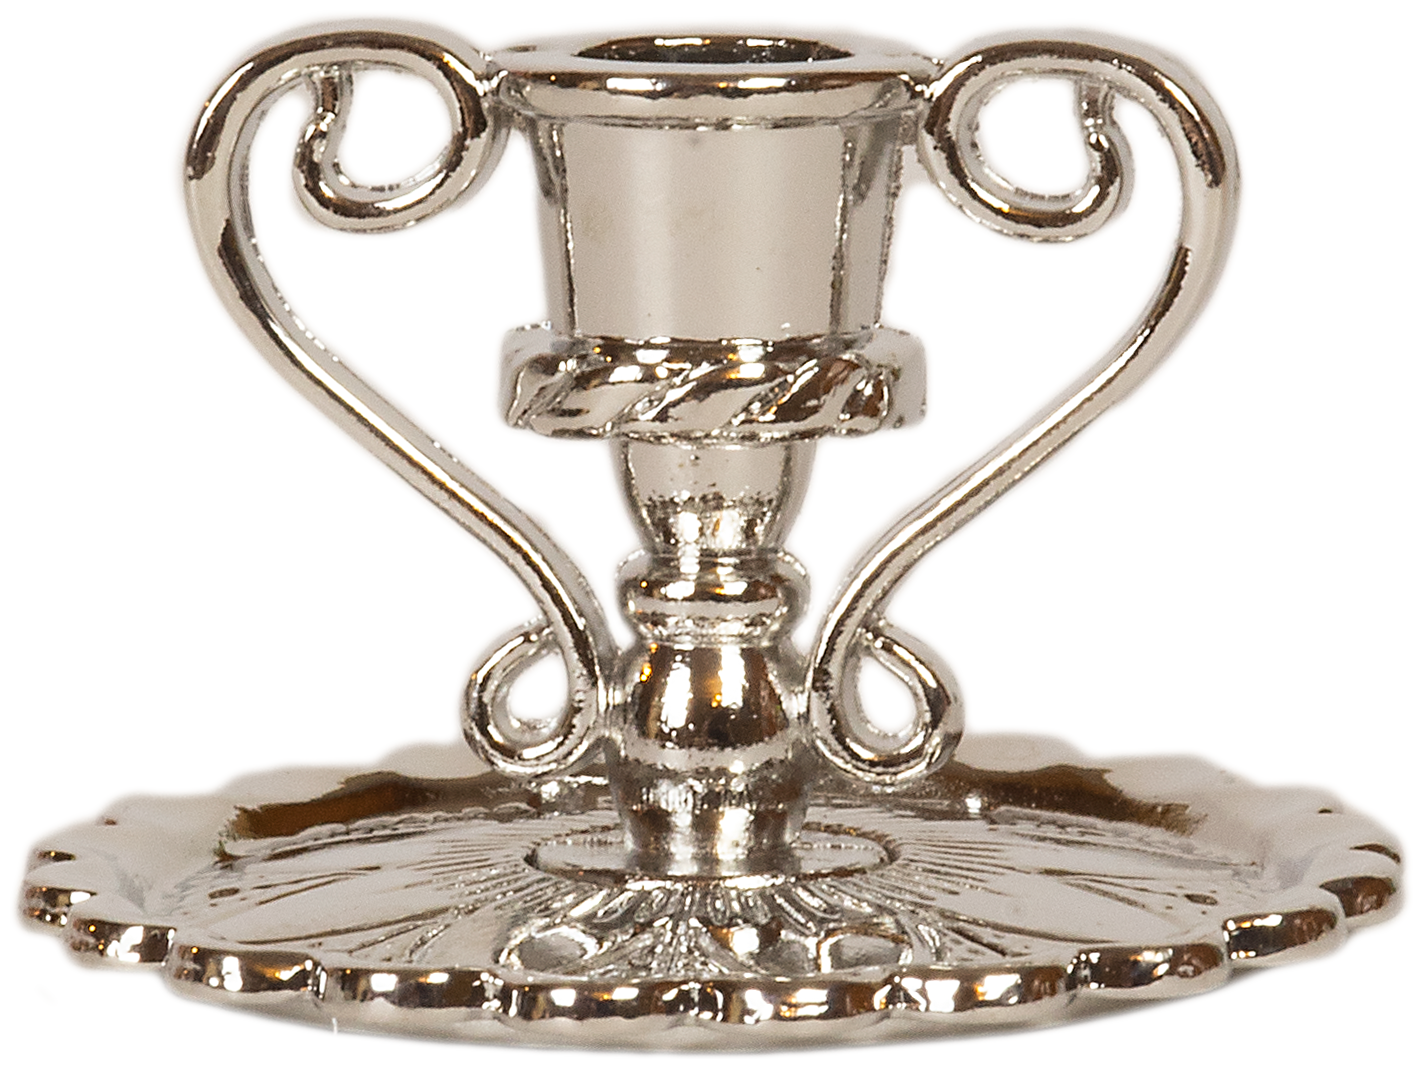 Подсвечник церковный металлический серебро с ручками / Подсвечник для свечи религиозный, диаметр - 8 мм под свечу, высота - 2.5 см, ширина - 3 см